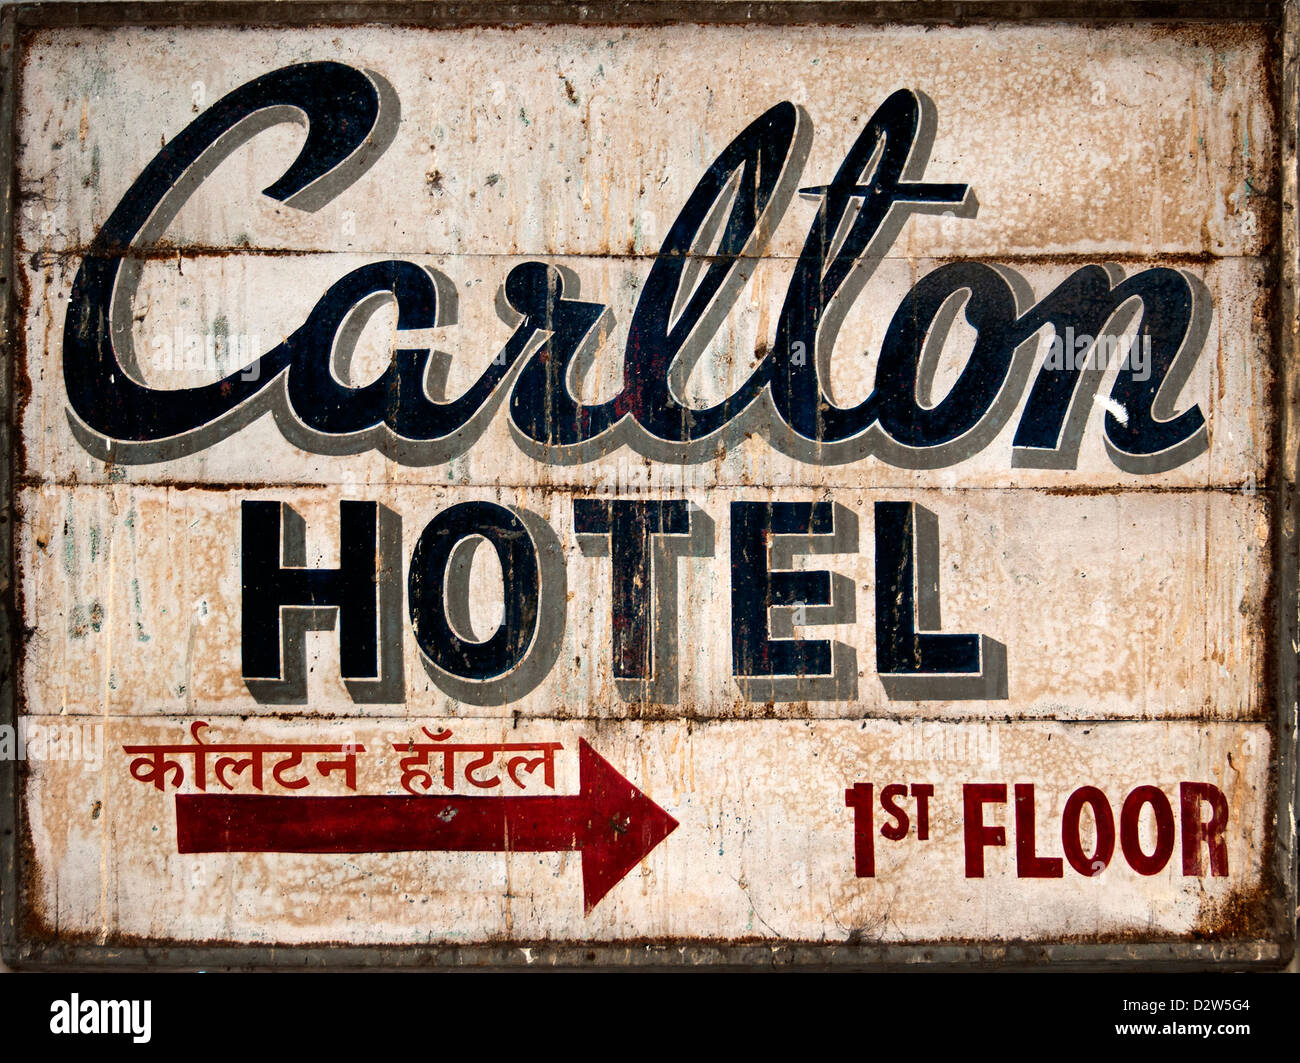 Hotel Carlton firmar placa con el nombre de Mumbai (Bombay) India Foto de stock